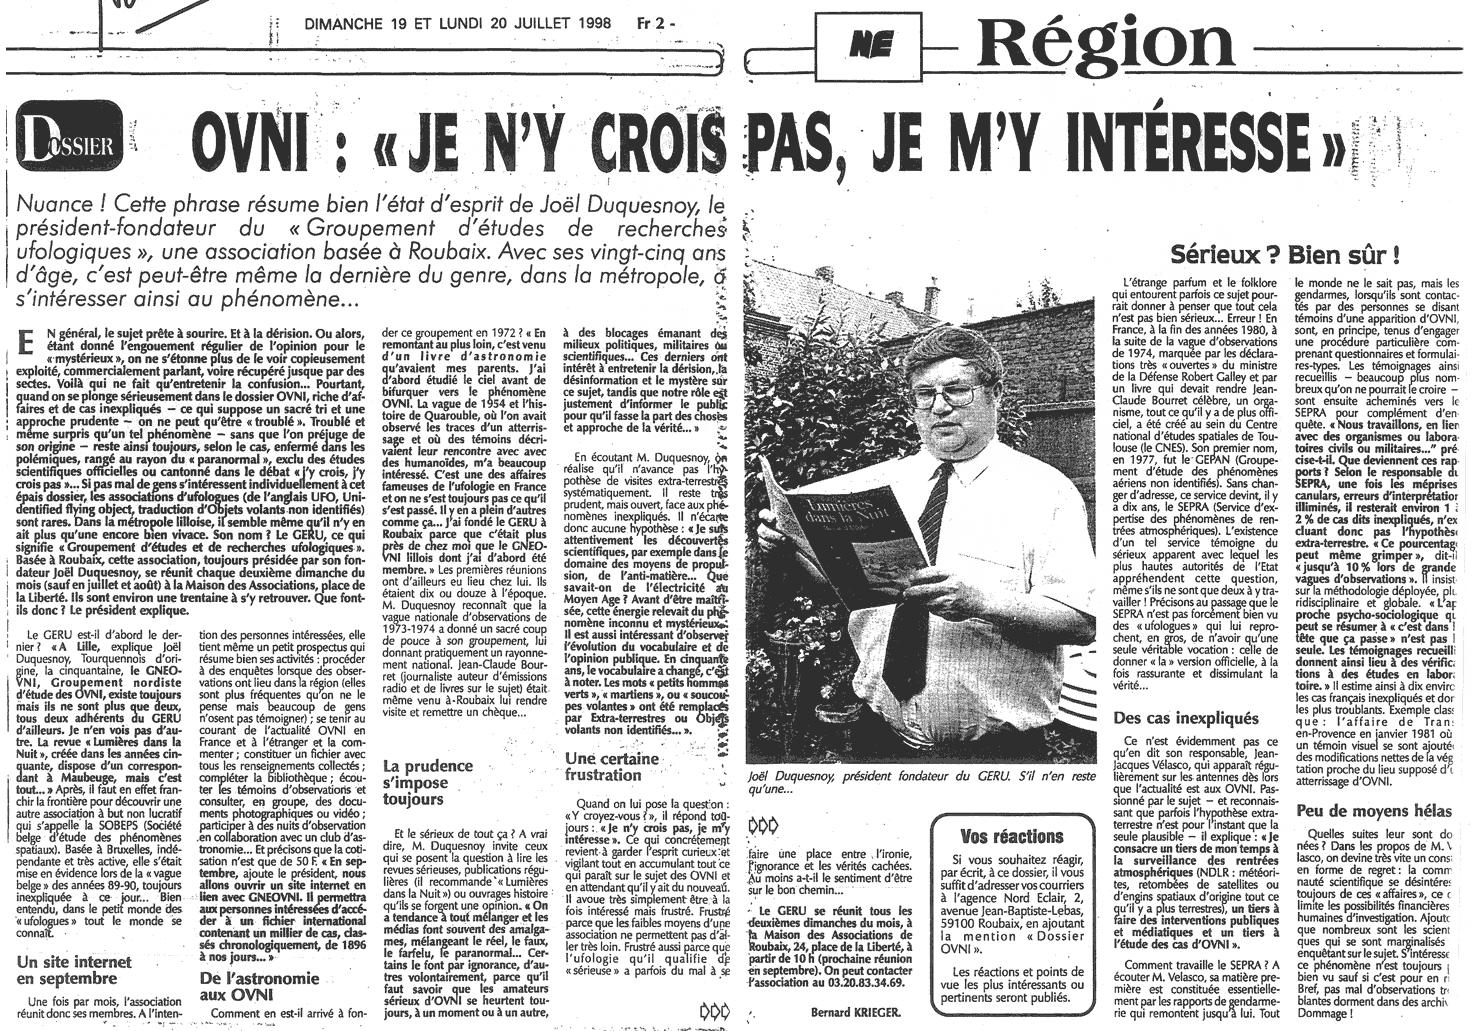 Interview de Joël Duquesnoy (GERU) et Jean-Jacques Velasco (SEPRA)